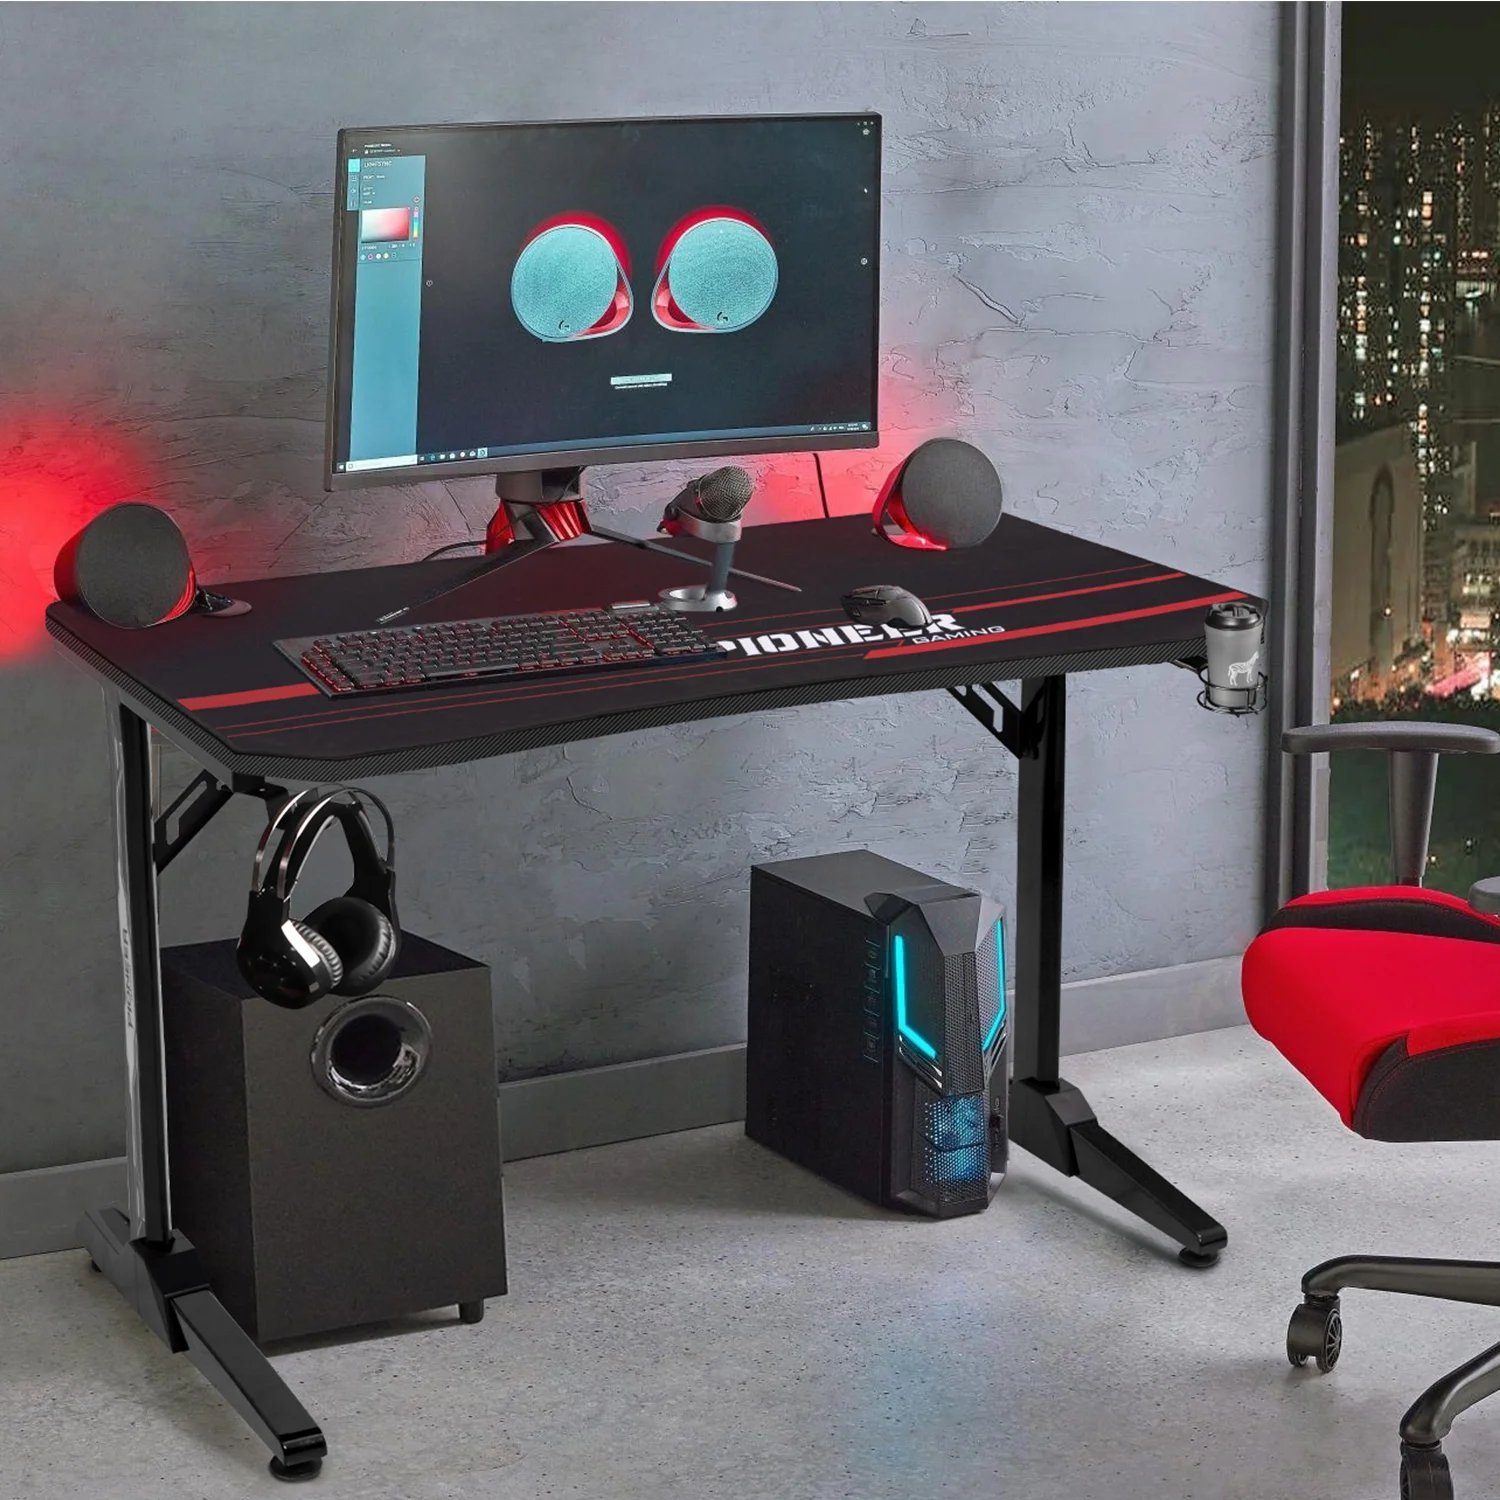 HOMALL Gamingtisch 140 cm Computer Schreibtisch Gamer Tisch Schwarz, rot, blau